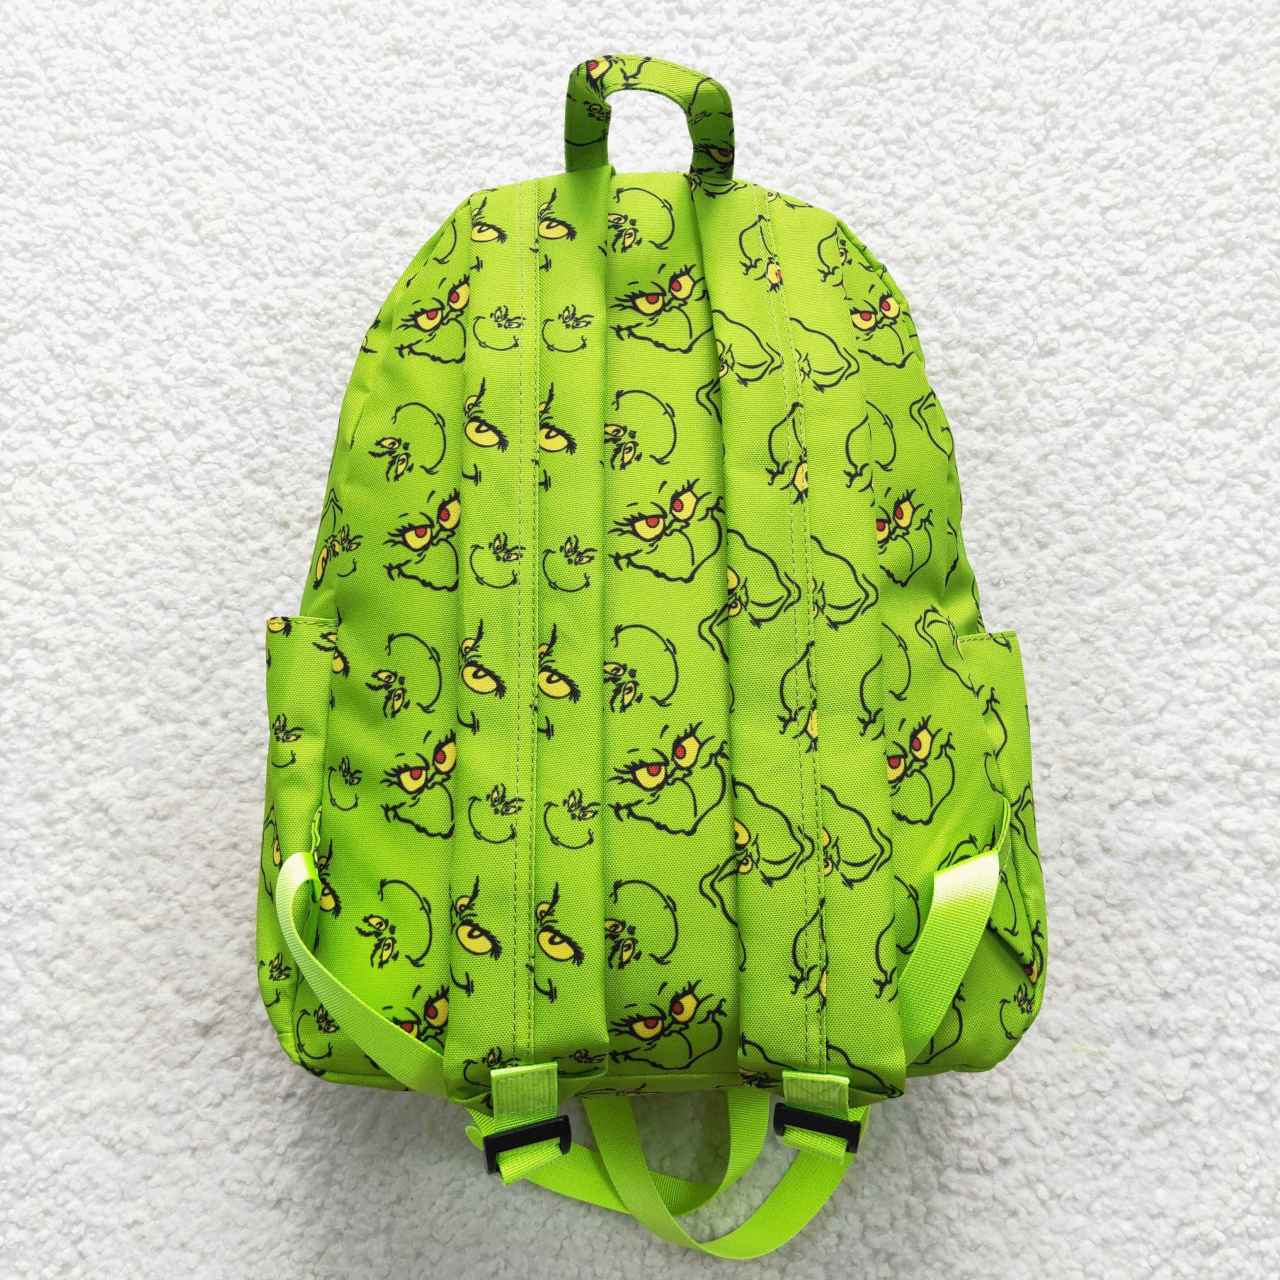 BA0119 Green Monster Green Backpack